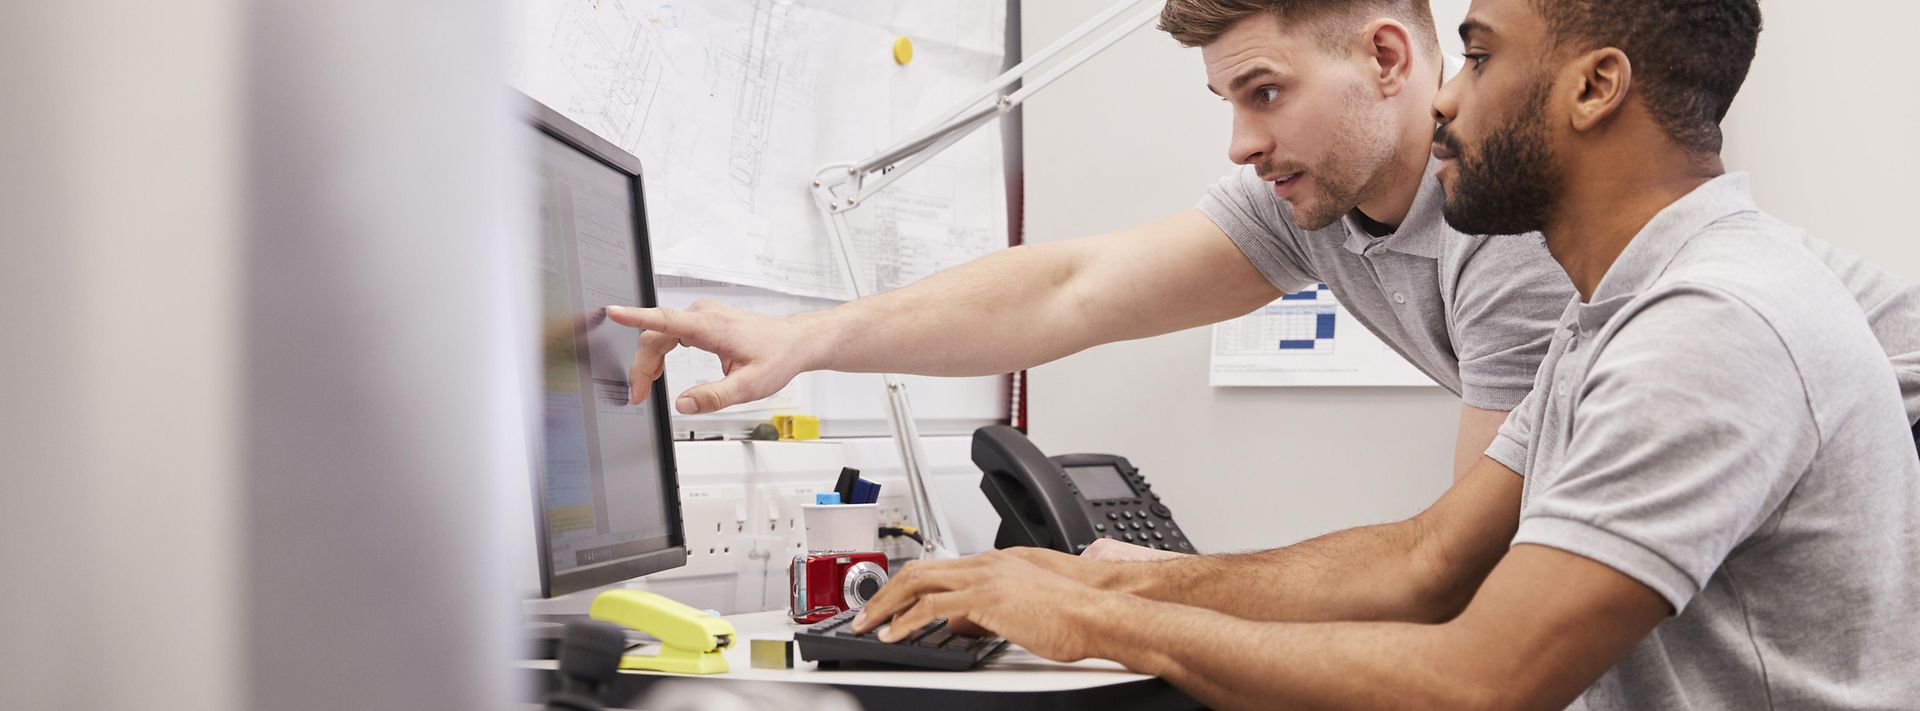 Ein Mann zeigt einem am Computer sitzenden Arbeitskollegen etwas auf dem Computer-Bildschirm.